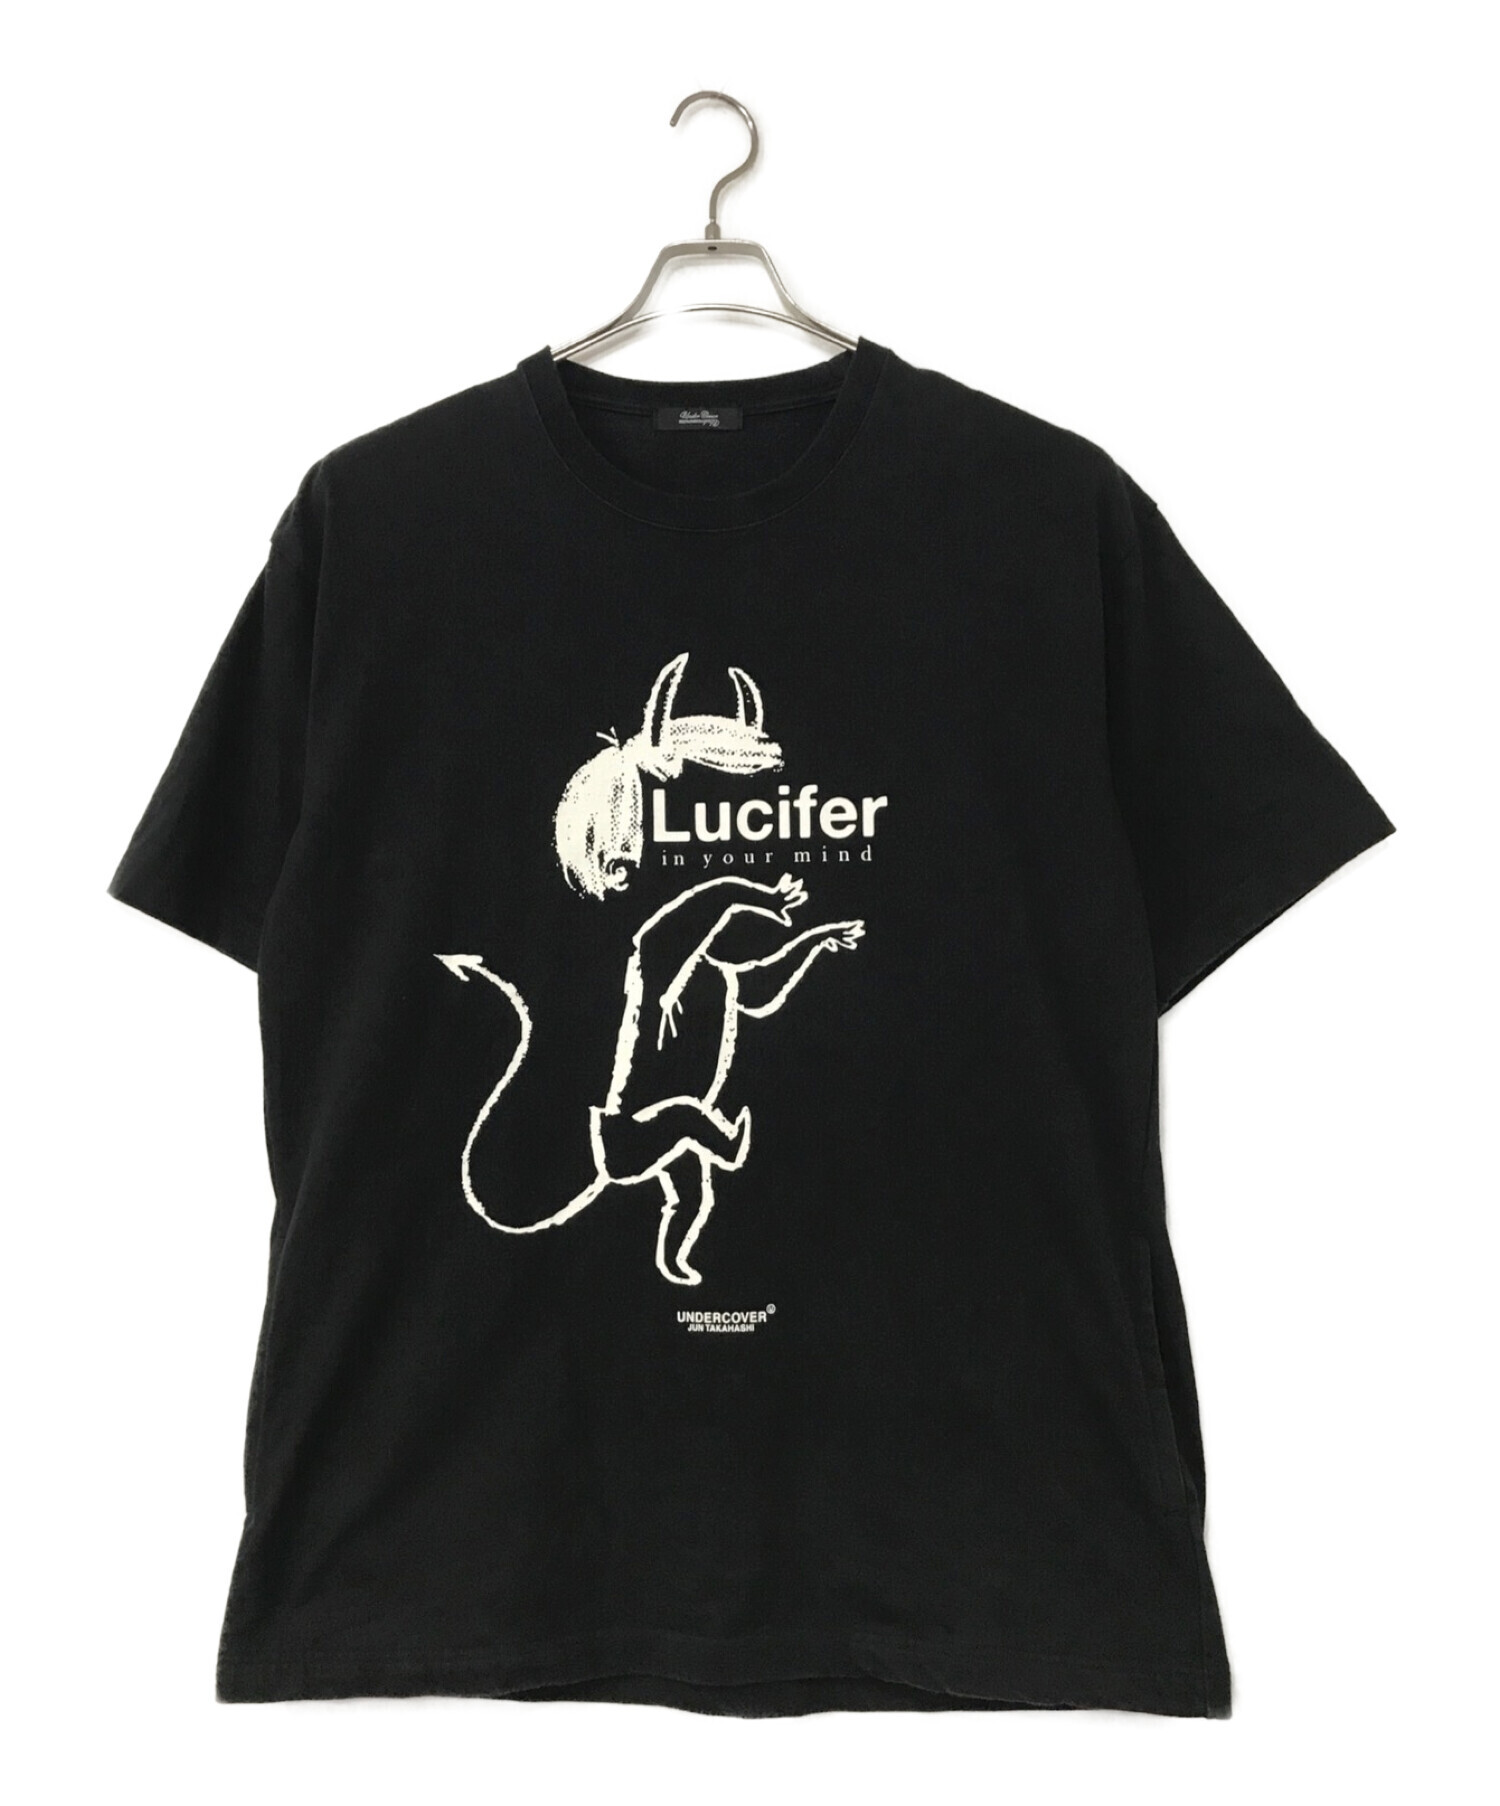 UNDERCOVER (アンダーカバー) LUCIFERオーバーサイズプリントTシャツ ブラック サイズ:4